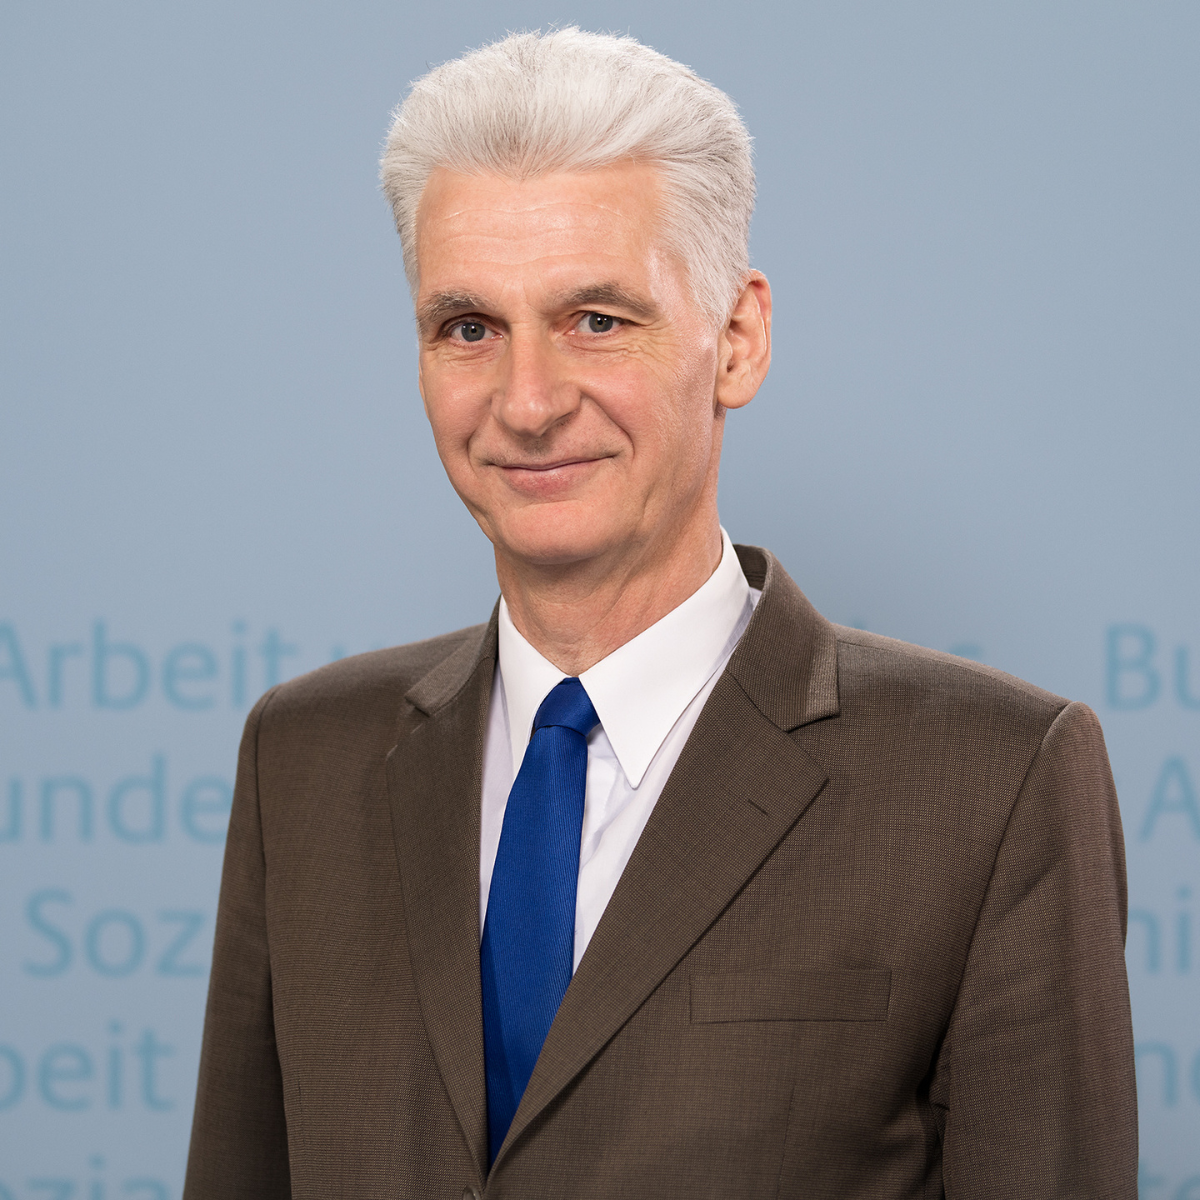 Dr. Rolf Schmachtenberg